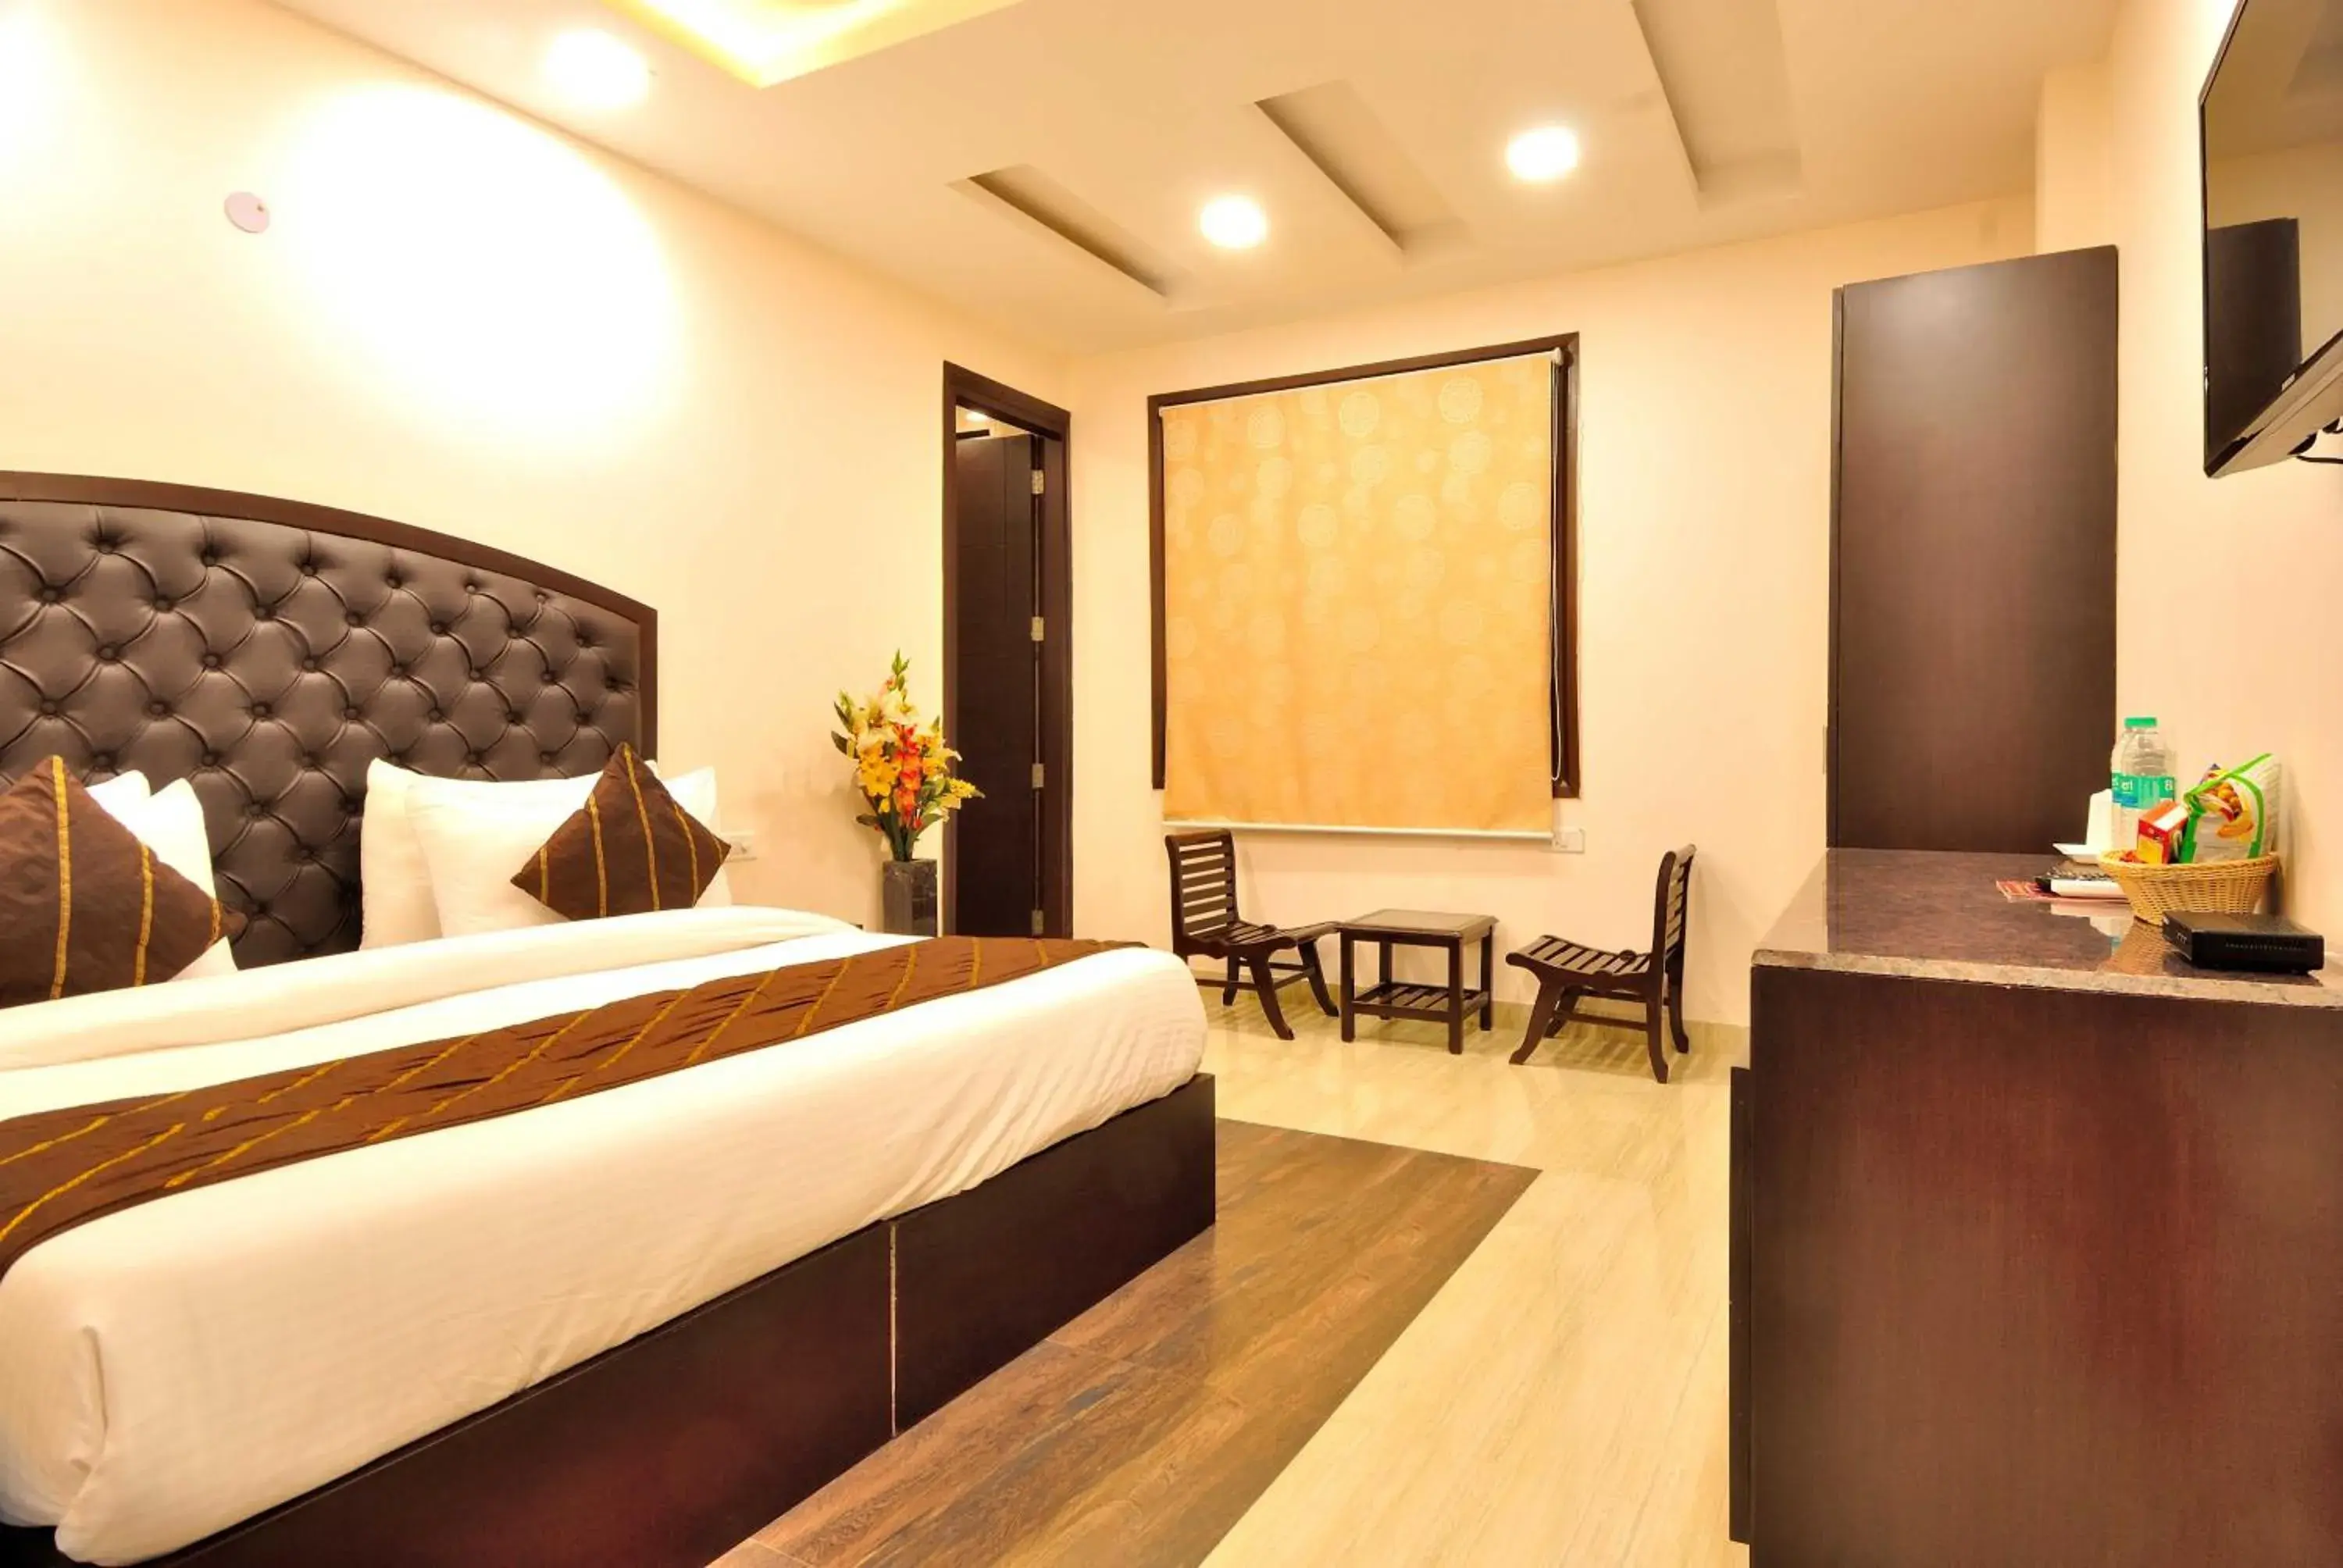 Bedroom in Hotel Kings Inn, Karol Bagh, New Delhi